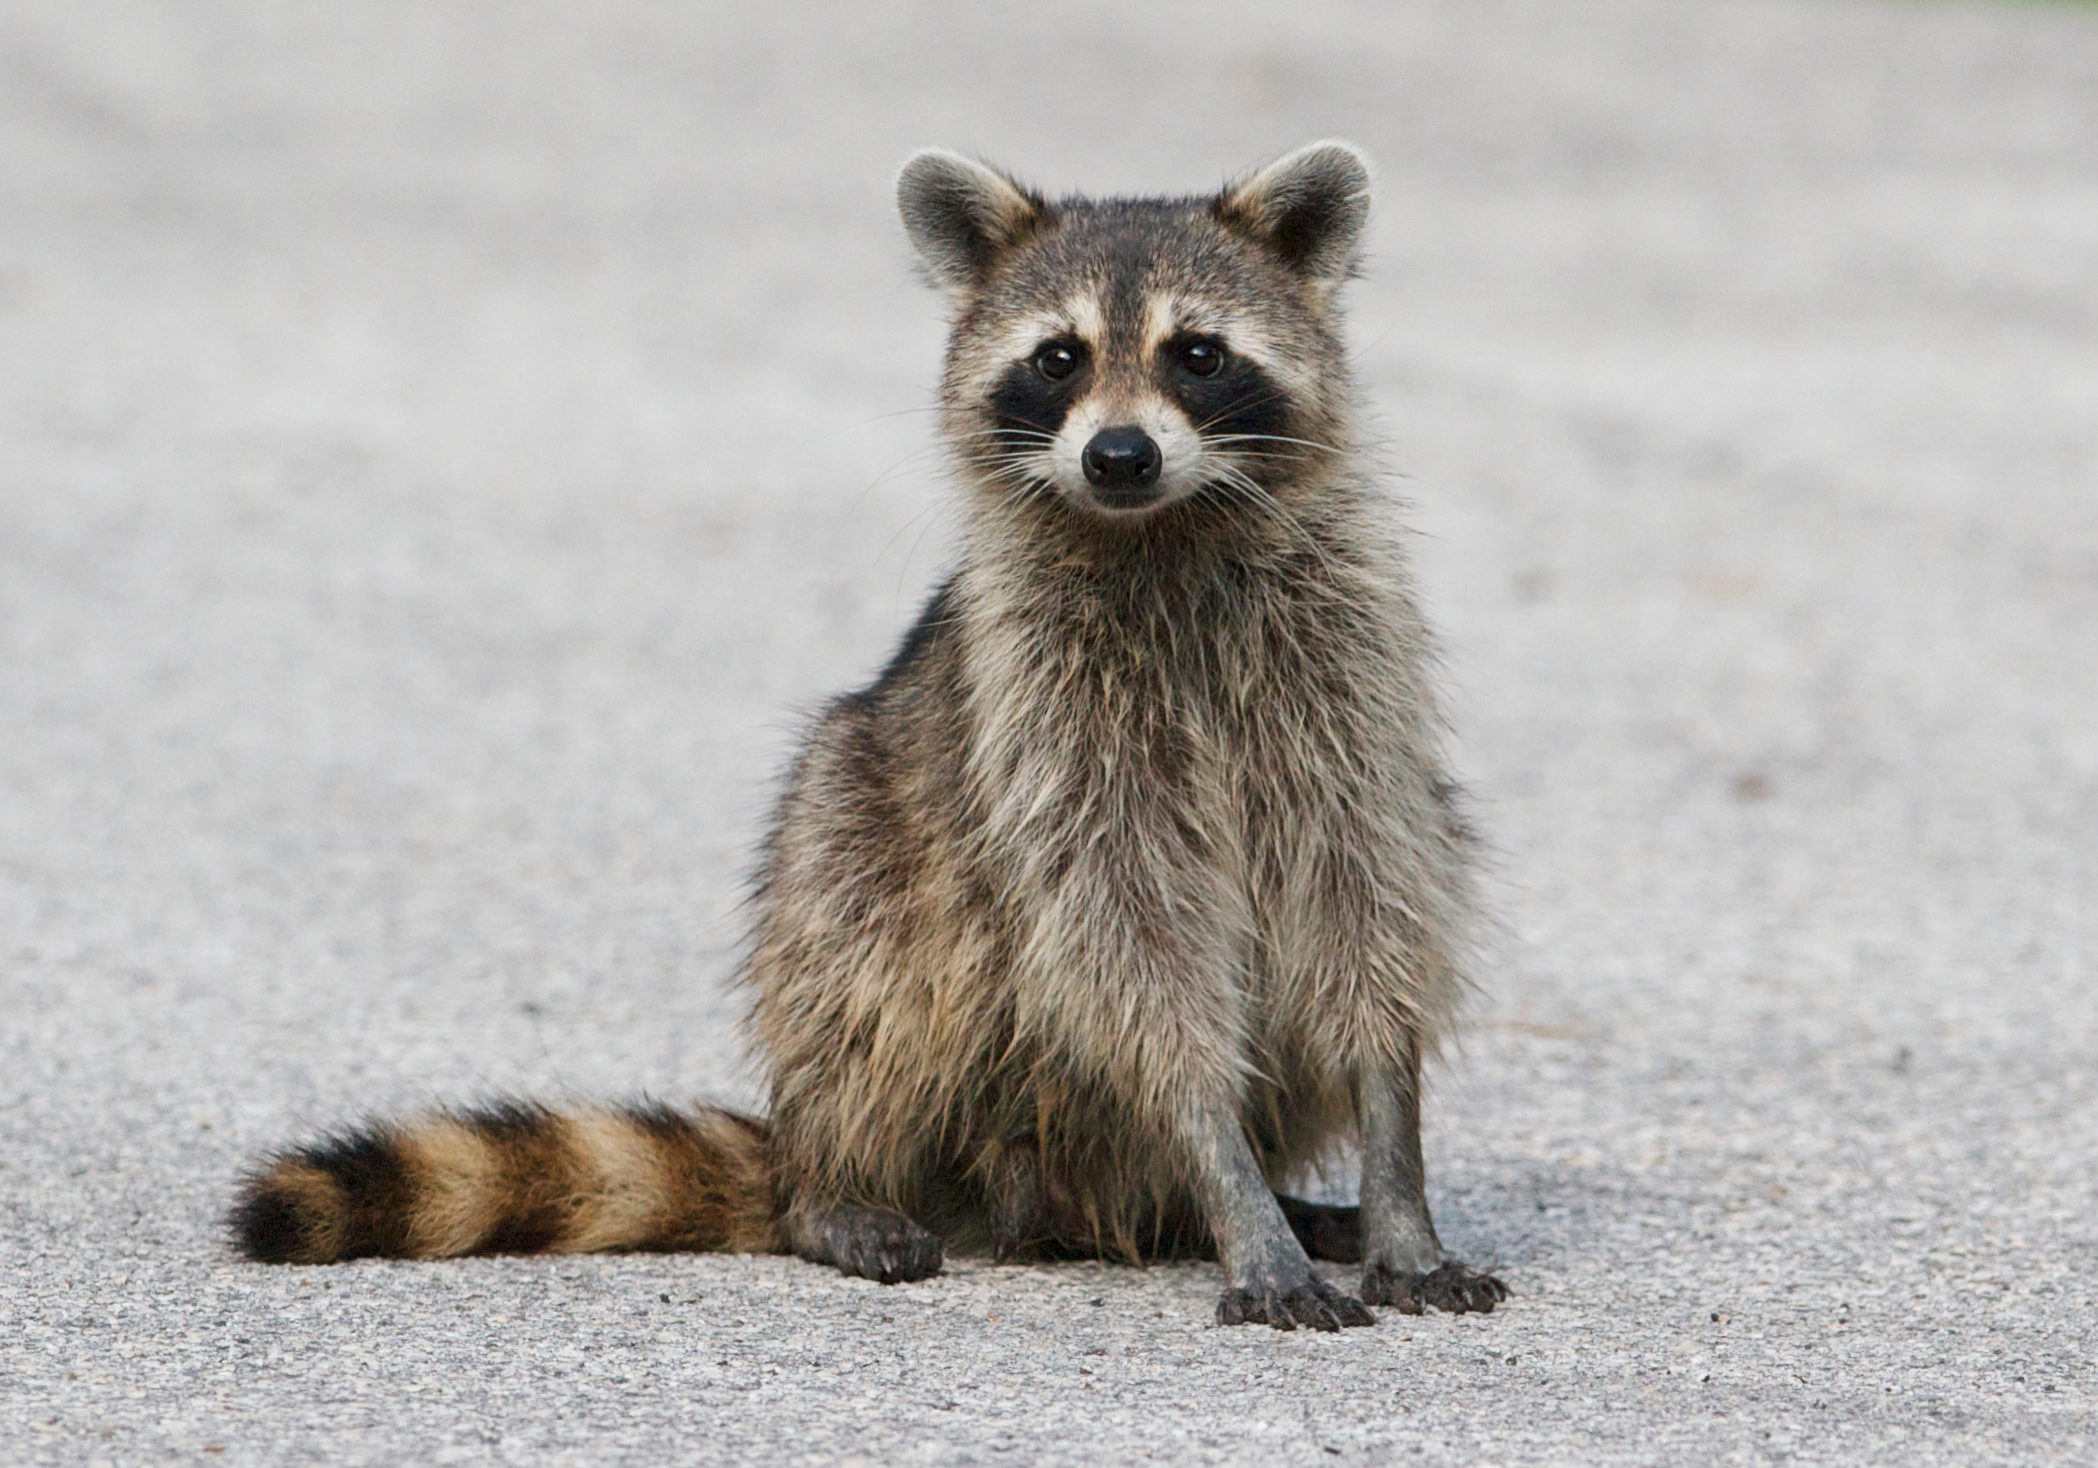 Raccoon in middle of asphalt road